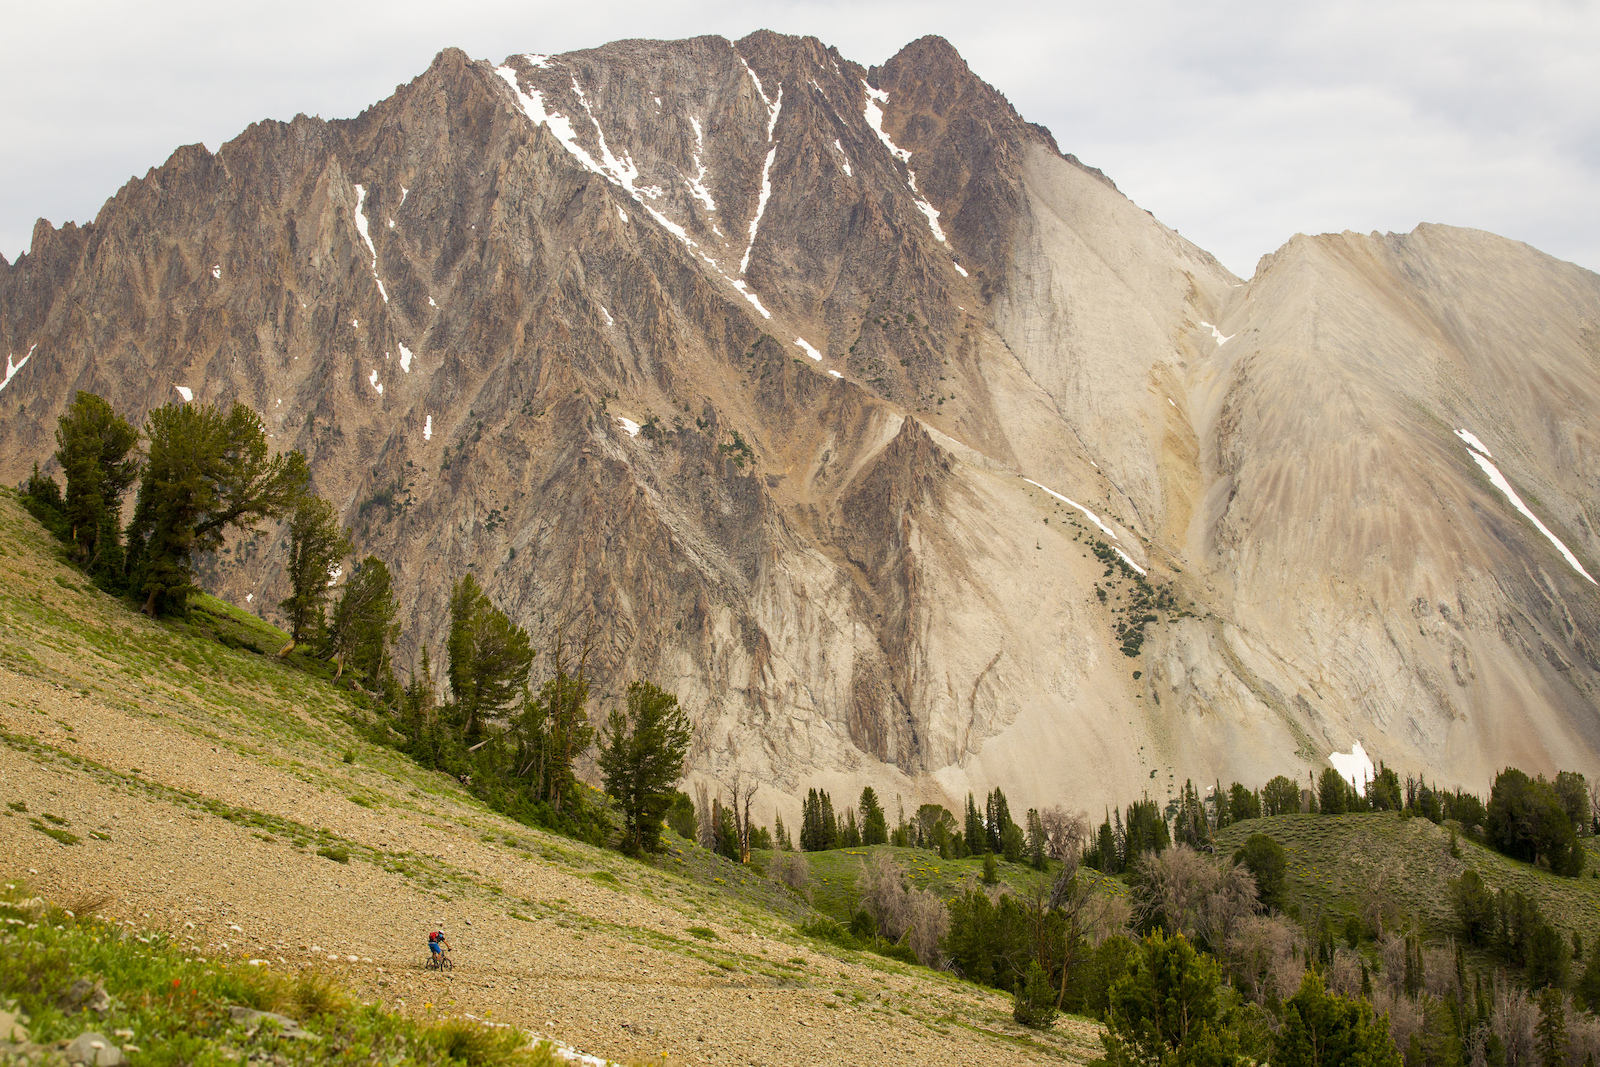 Wilderness mountain biking Photo By Leslie Kehmeier Courtesy of IMBA